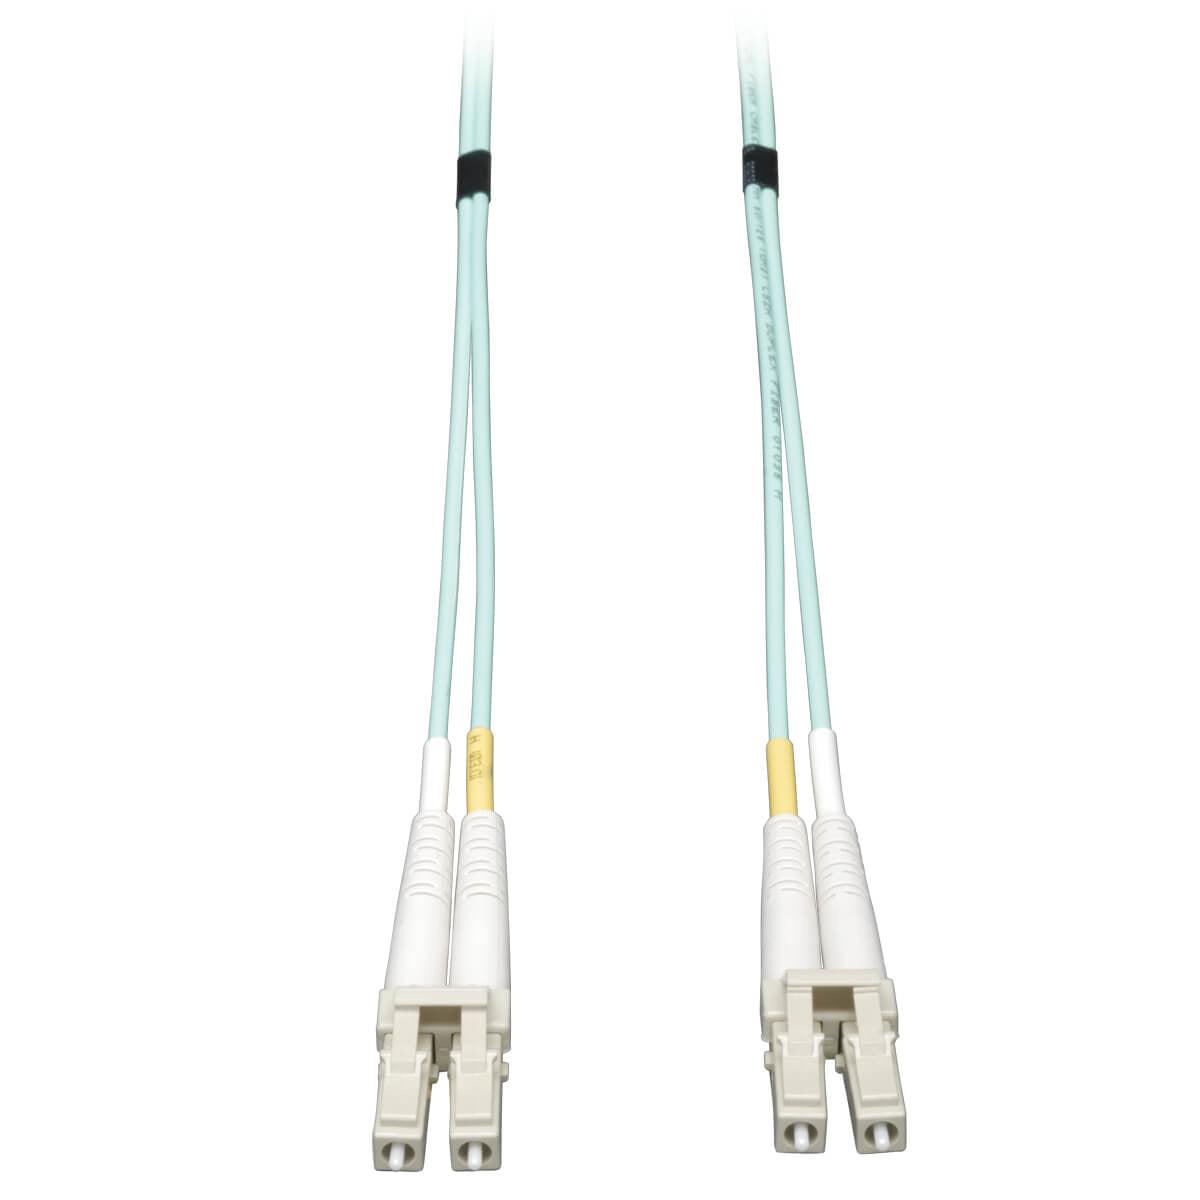 Tripp Lite N820-15M 10Gb Duplex Multimode 50/125 Om3 Lszh Fiber Patch Cable, (Lc/Lc) - Aqua, 15M (50 Ft.)